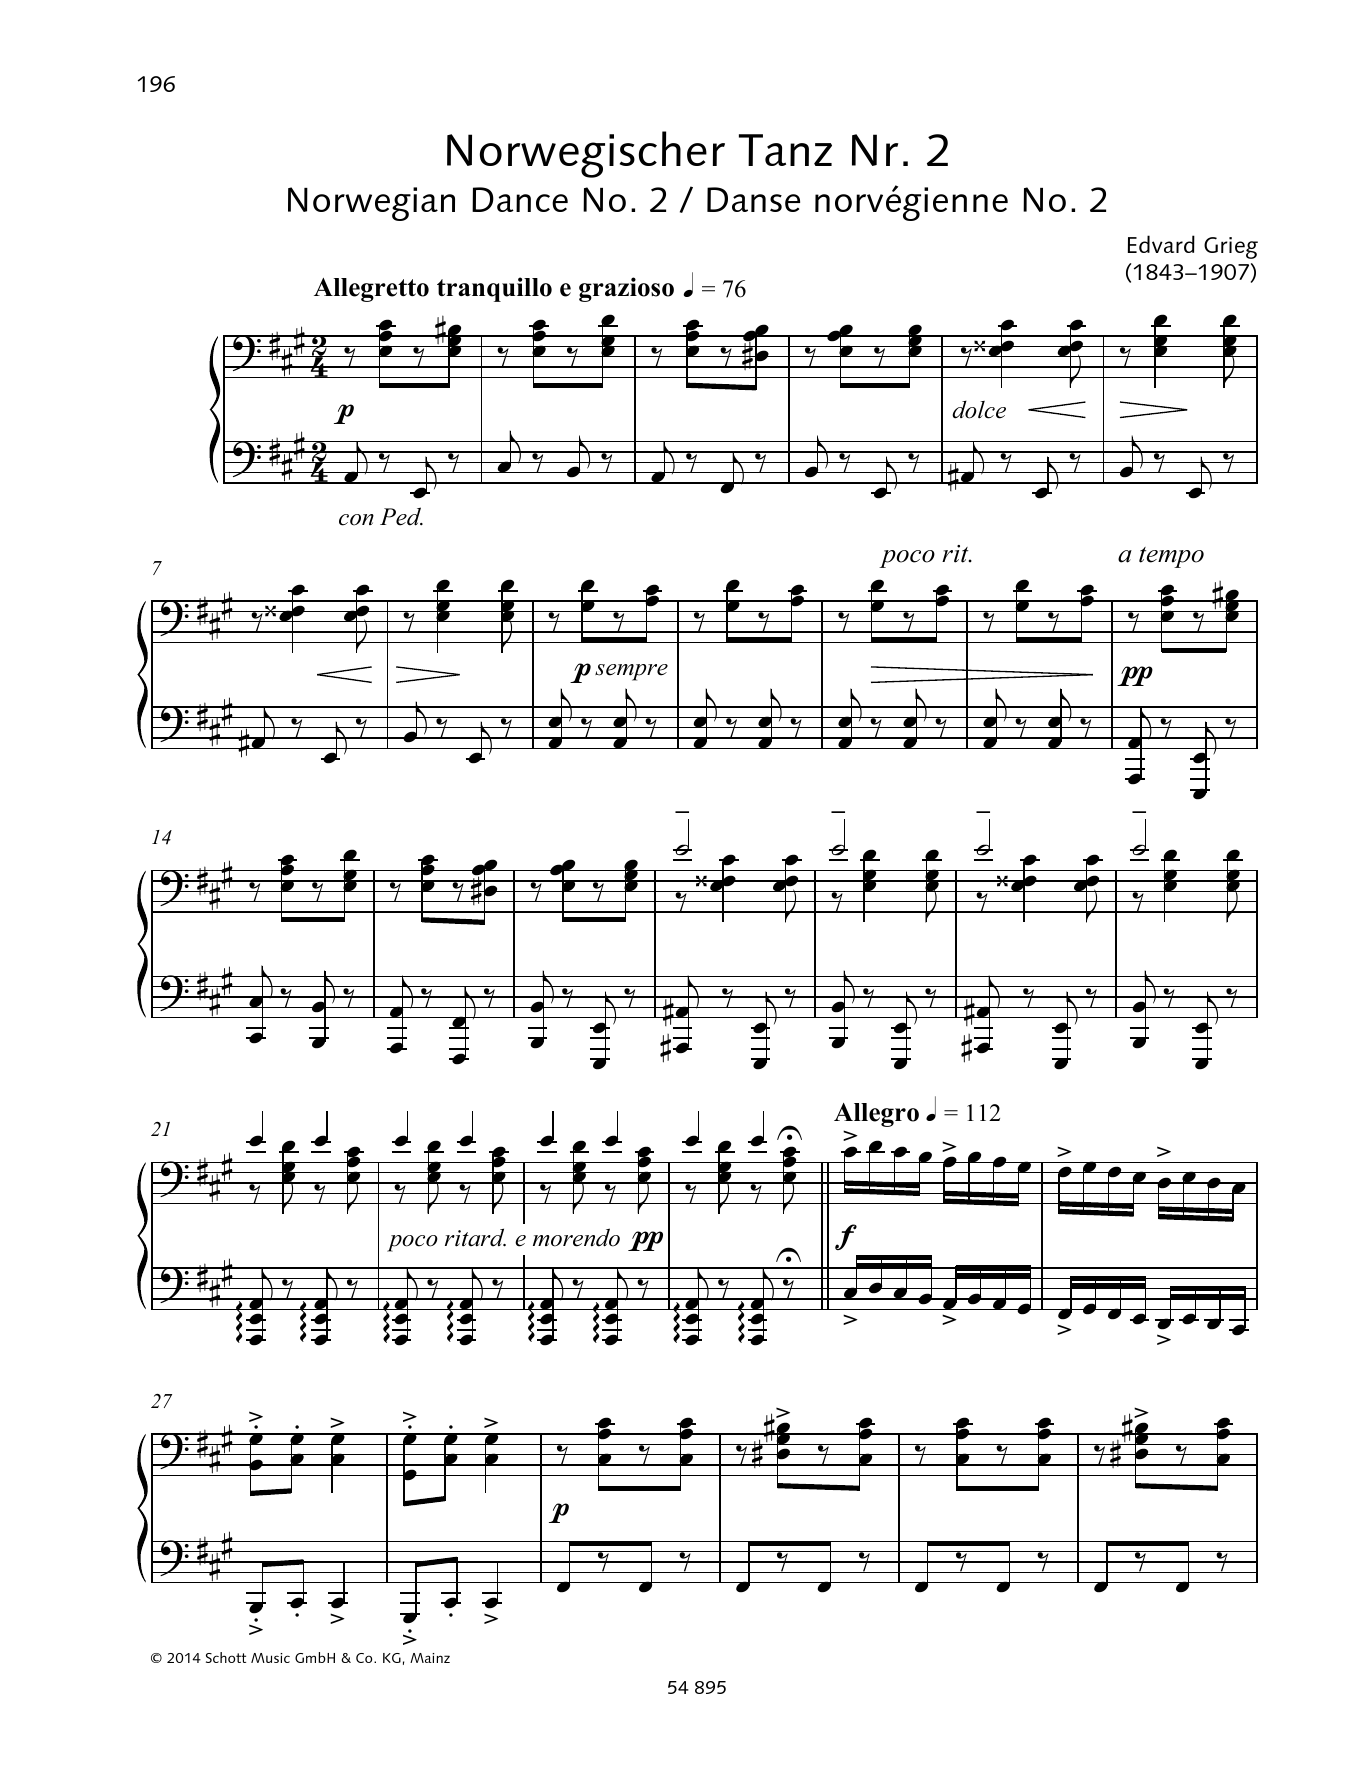 Download Edvard Grieg Norwegian Dance No. 2 Sheet Music